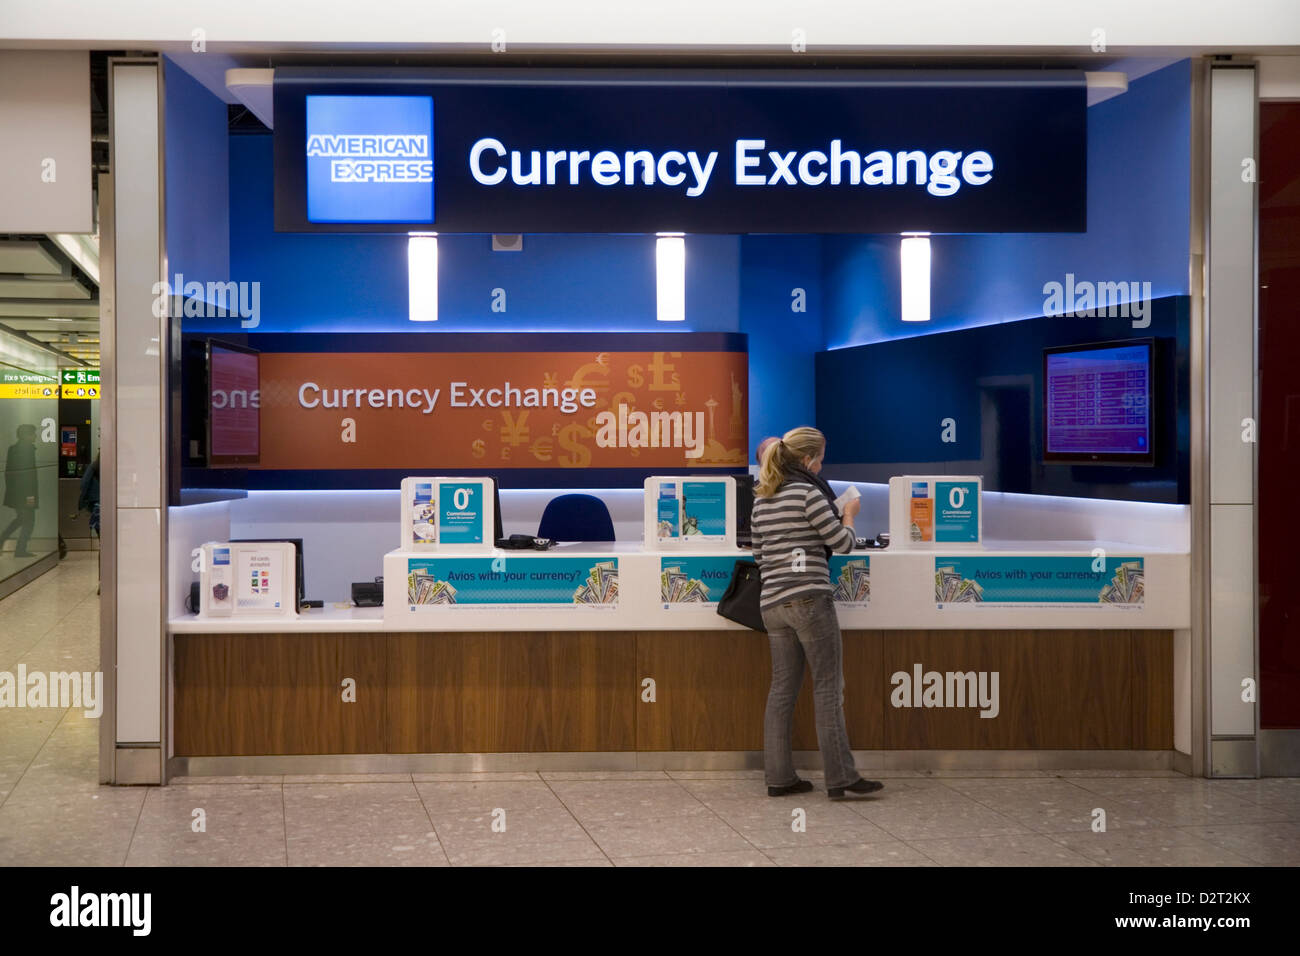 Bureau de Change Office operati da American Express presso l'aeroporto di Heathrow, terminale 5 / 5. Londra. Regno Unito. Foto Stock